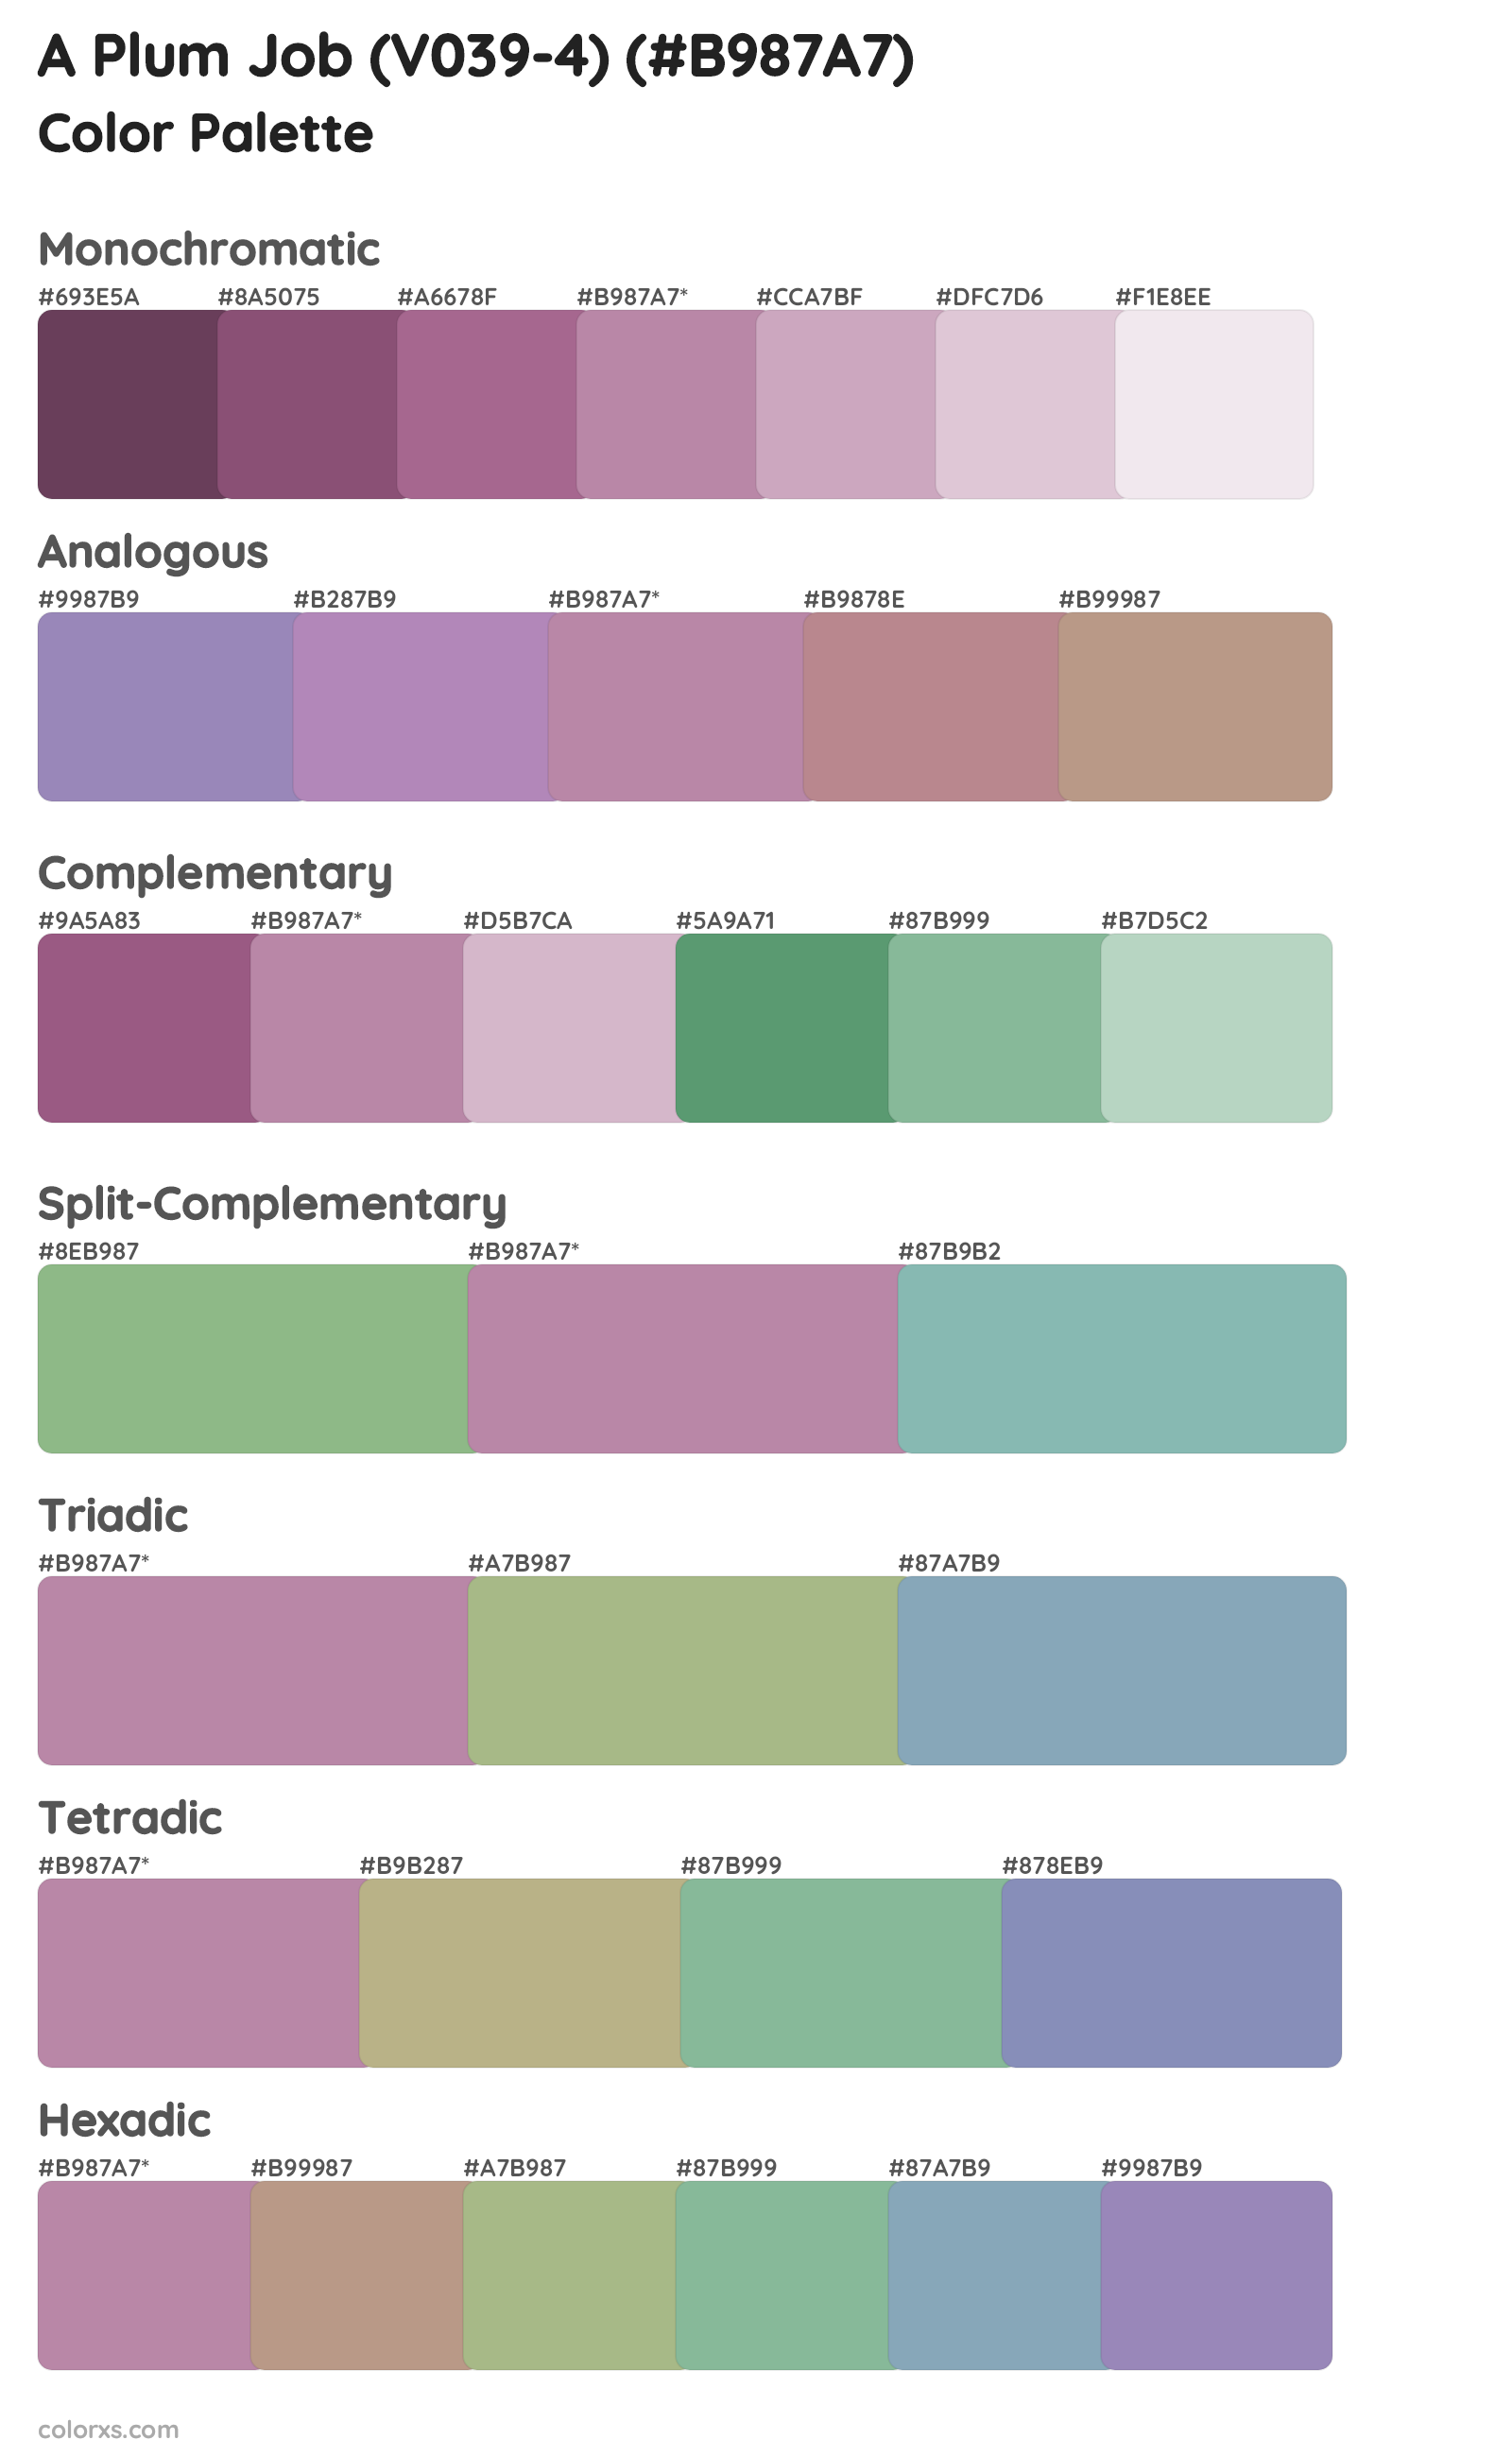 A Plum Job (V039-4) Color Scheme Palettes